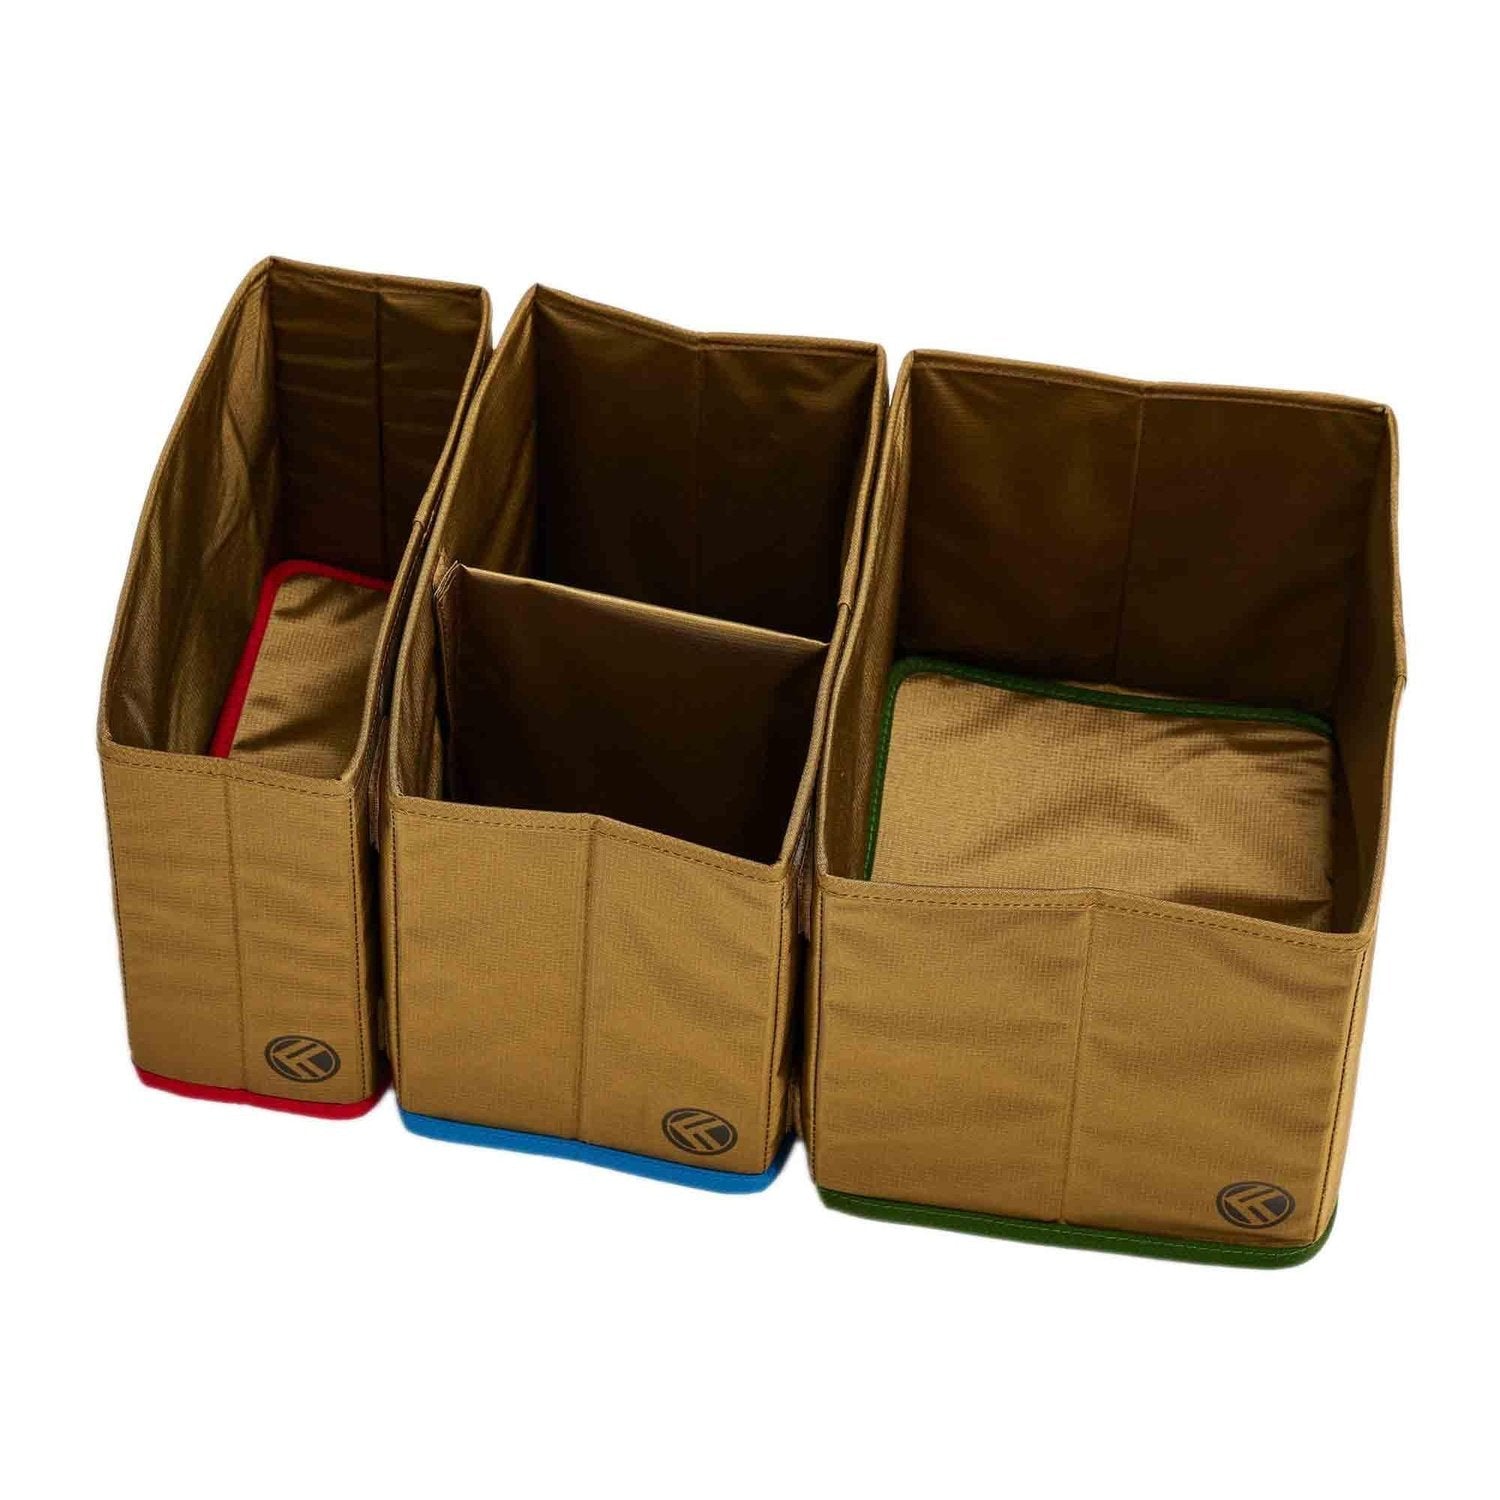 King Kong Bags King Kong Duffle Divider (Sporttaschen-Organiser) kaufen bei HighPowered.ch